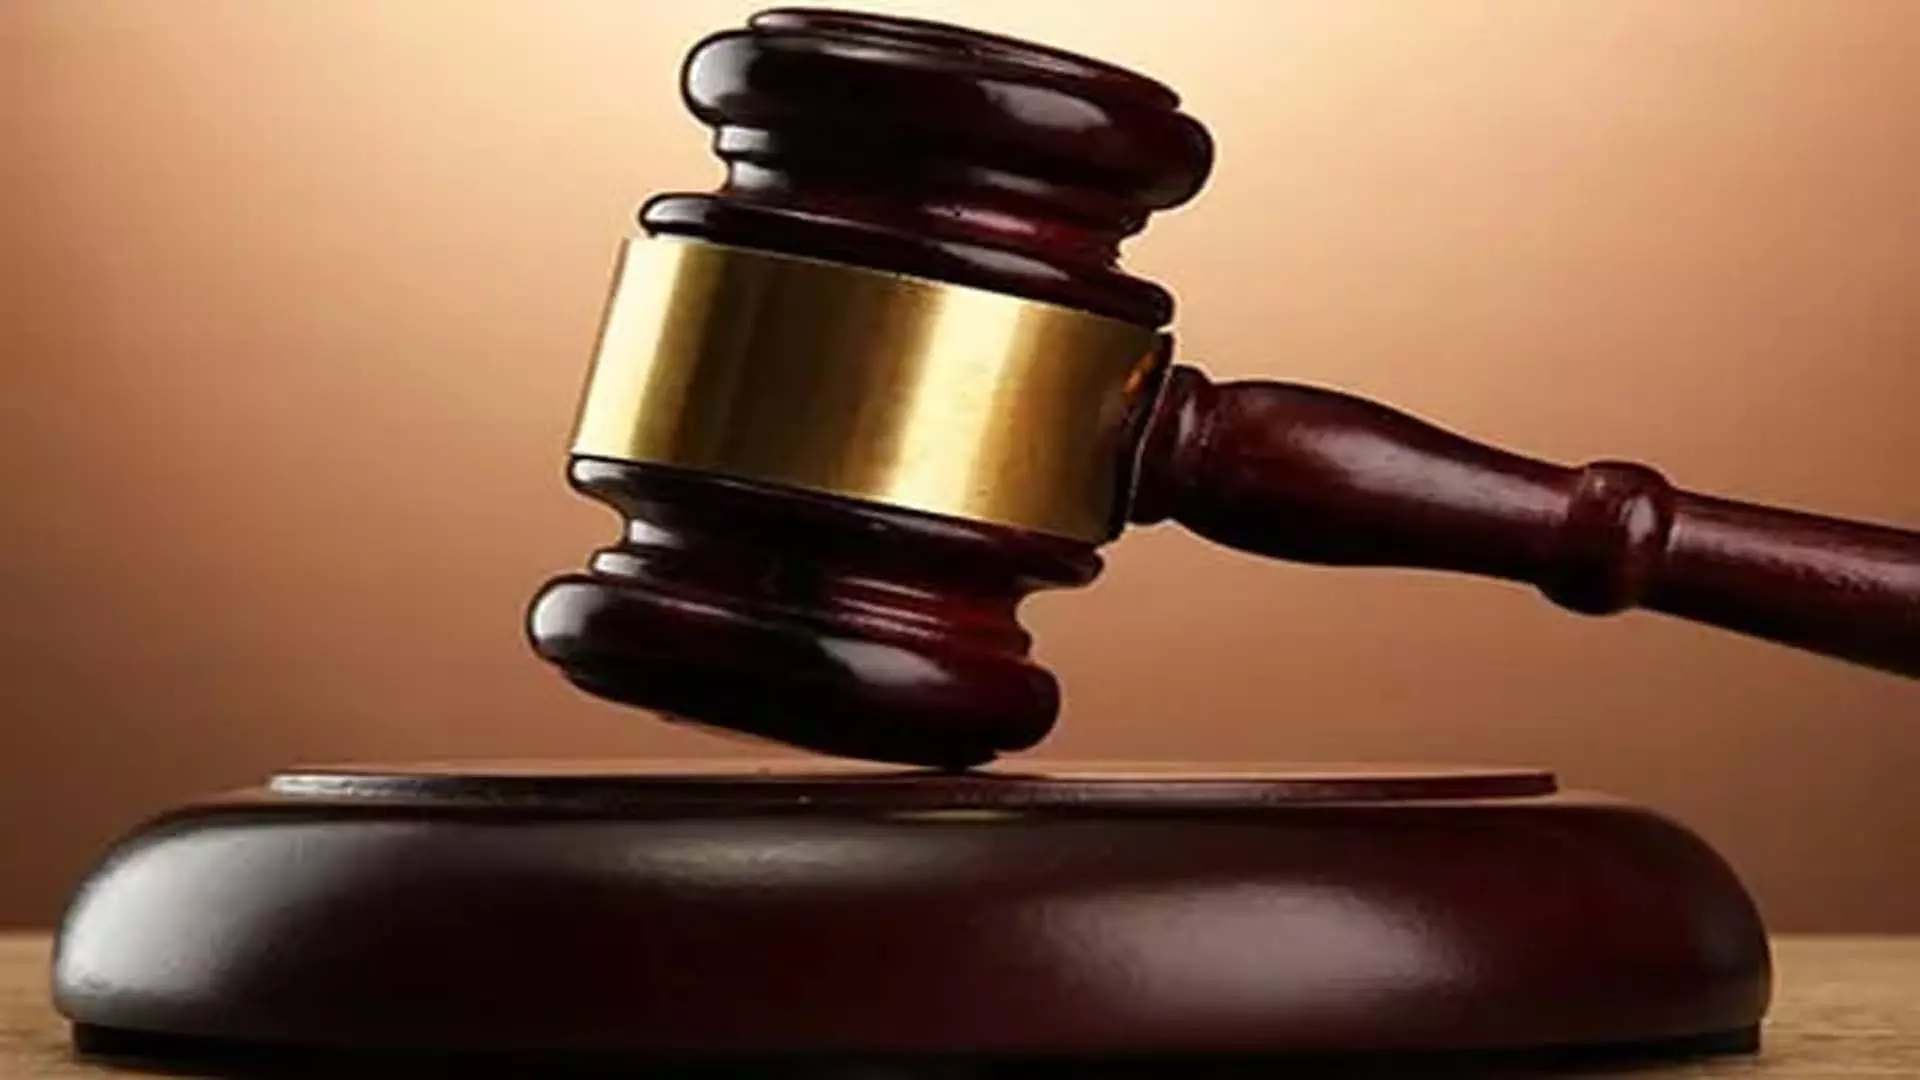 फर्जी बीमा दावों के मामले में जम्मू की सीबीआई अदालत ने 2 को दोषी ठहराया